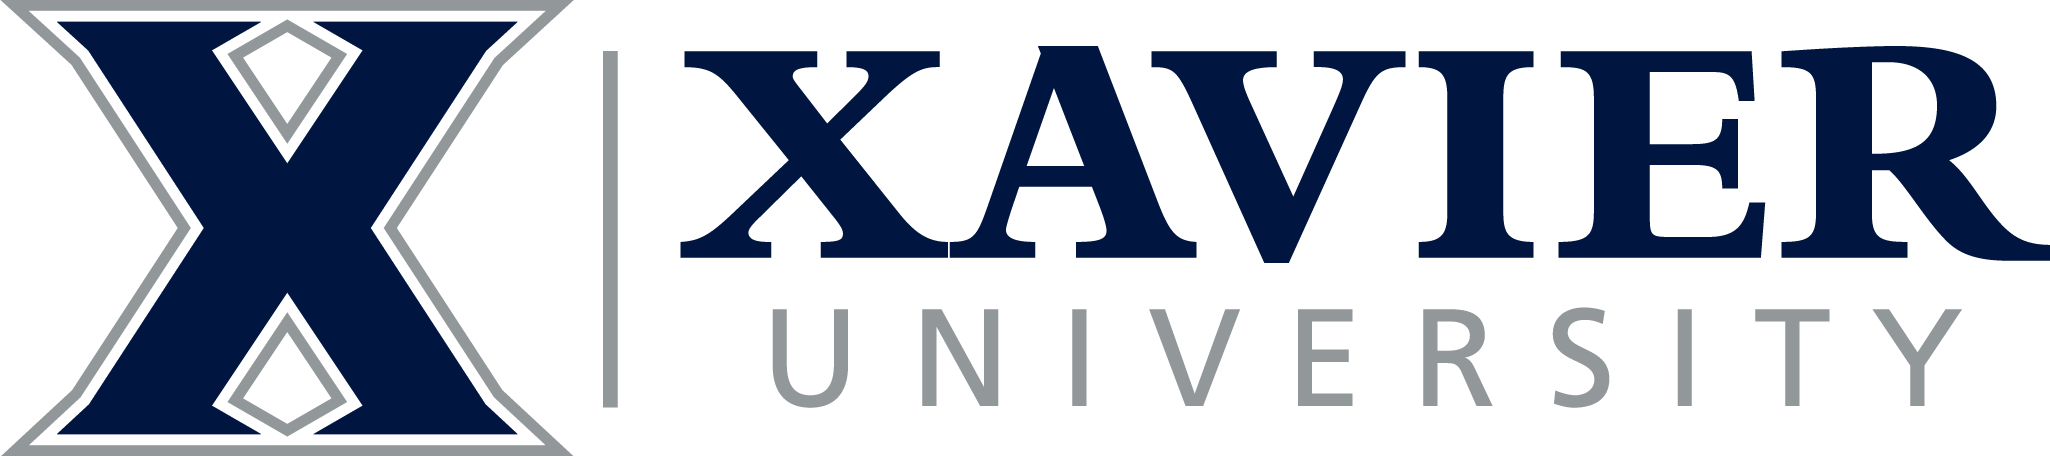 Xavier Logo - Xavier University Giving Home